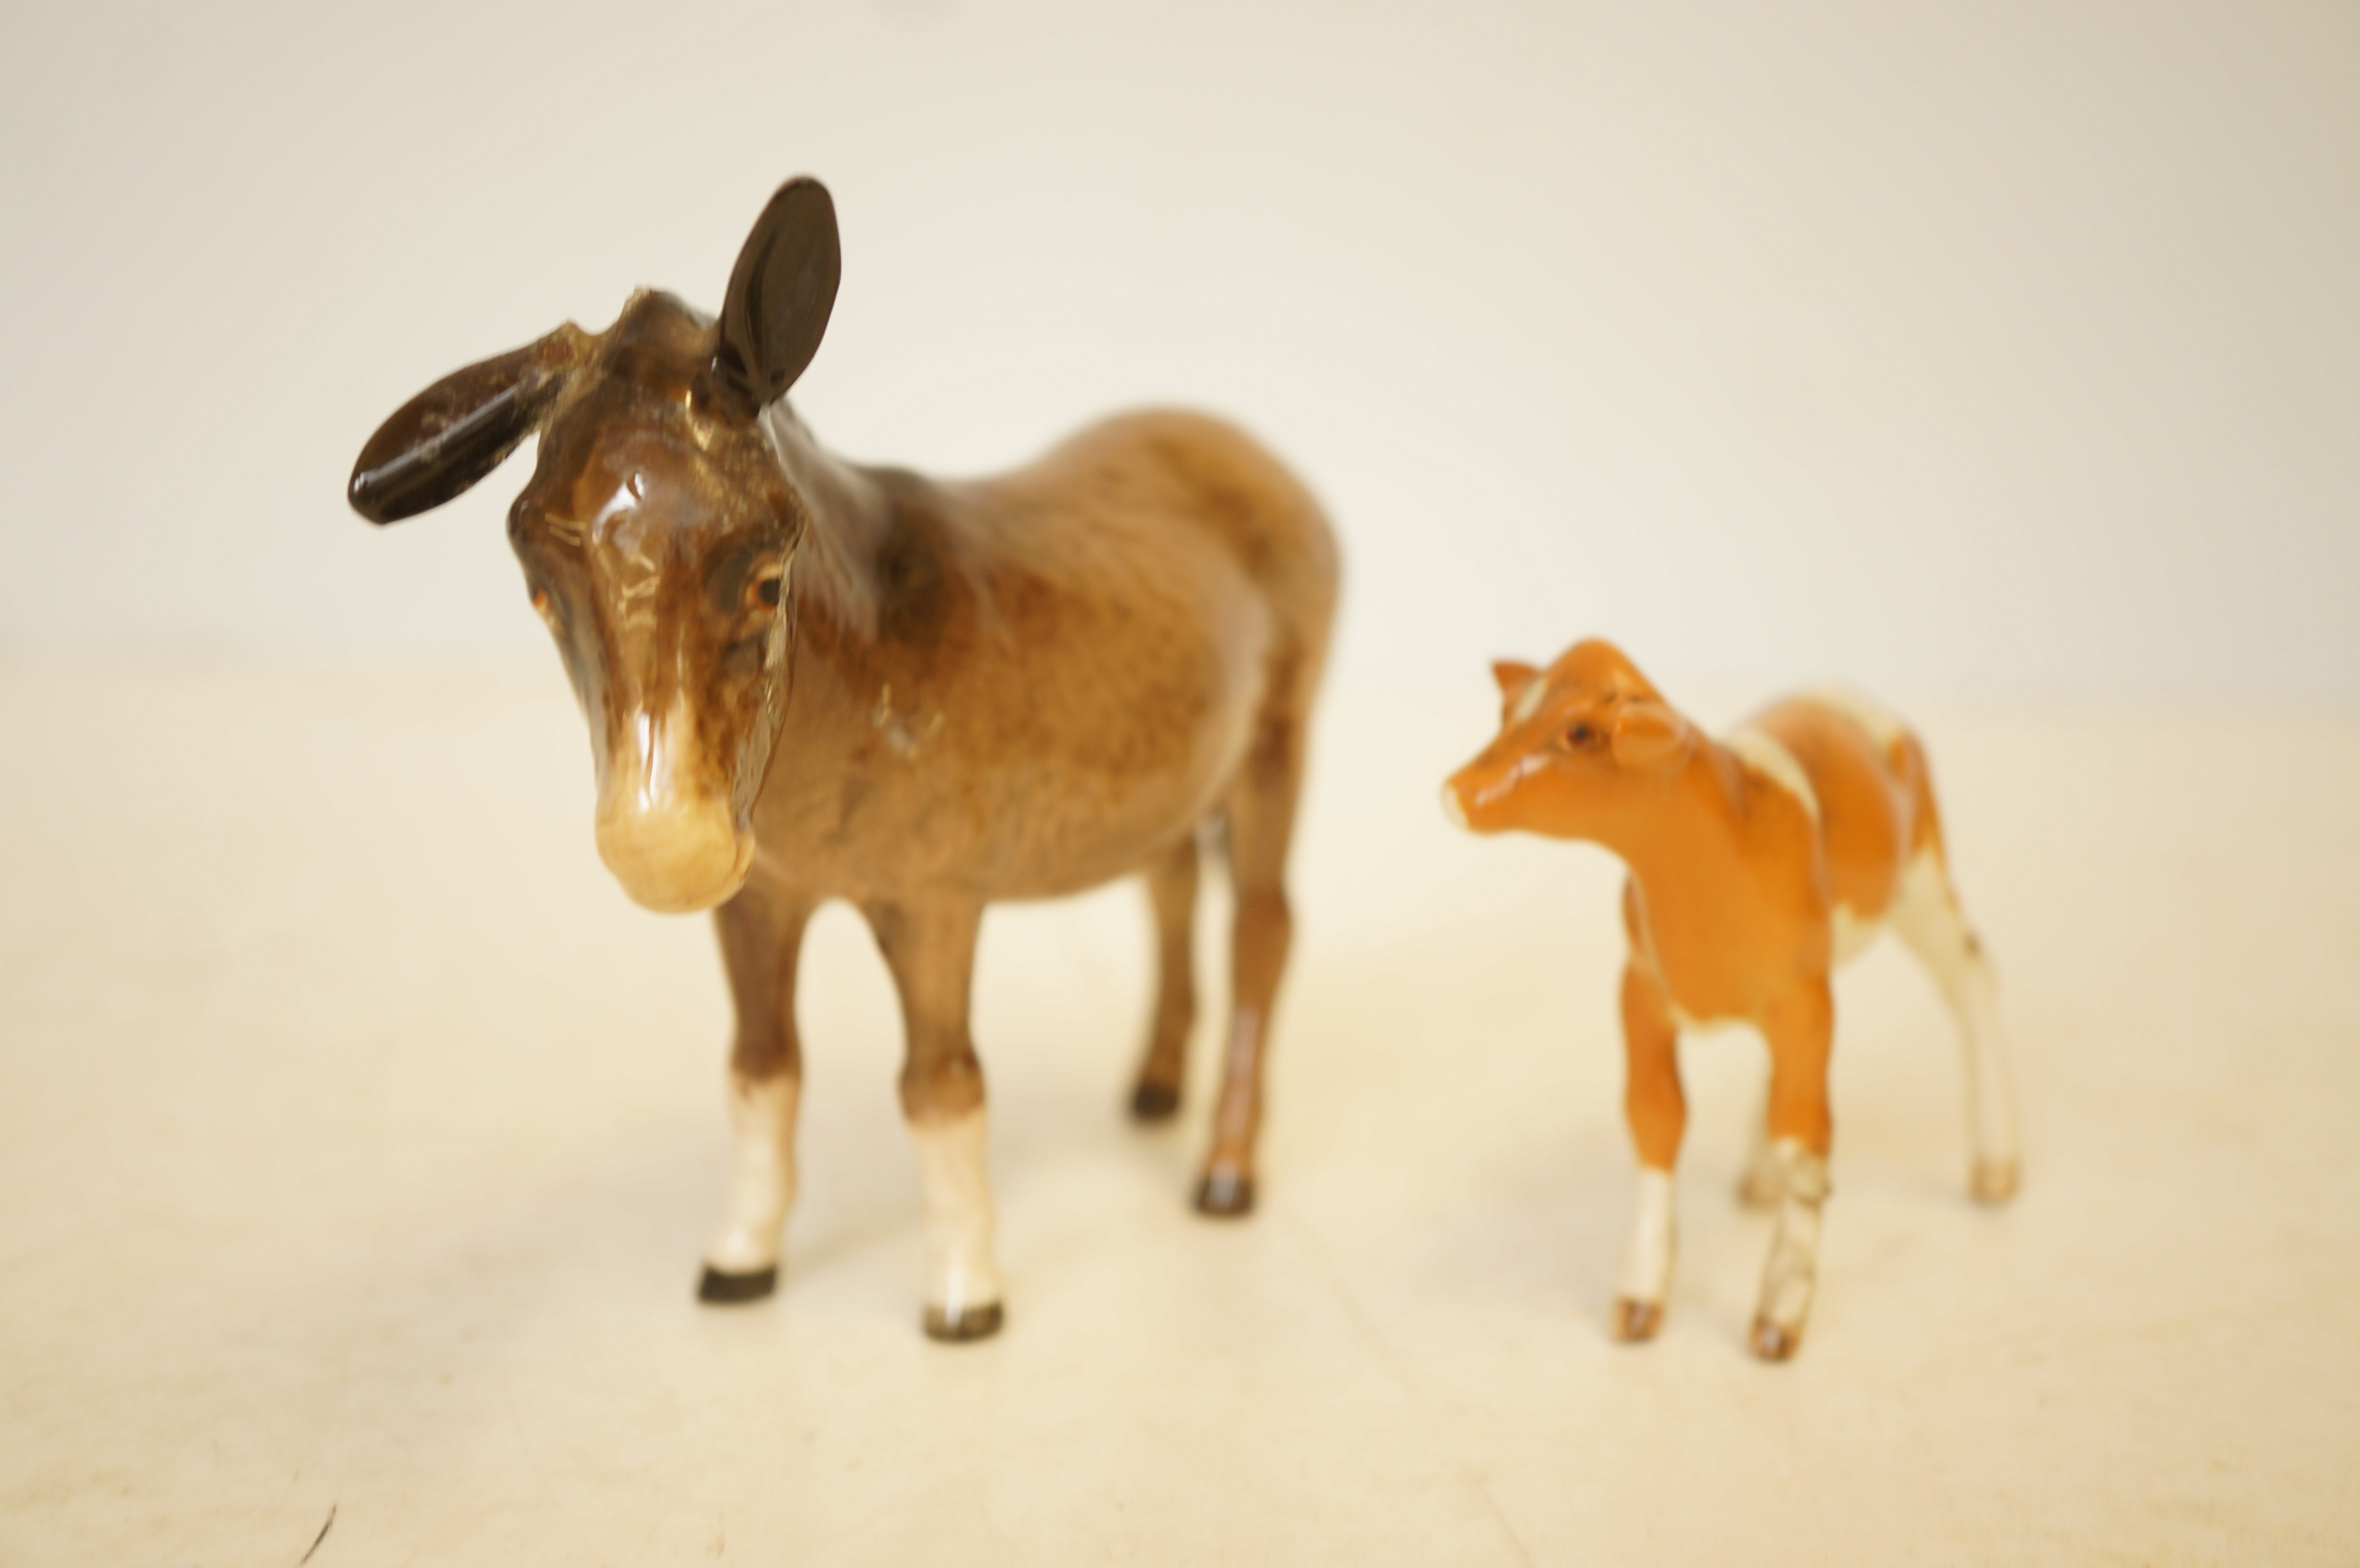 Beswick donkey & Beswick calf (both A/F)